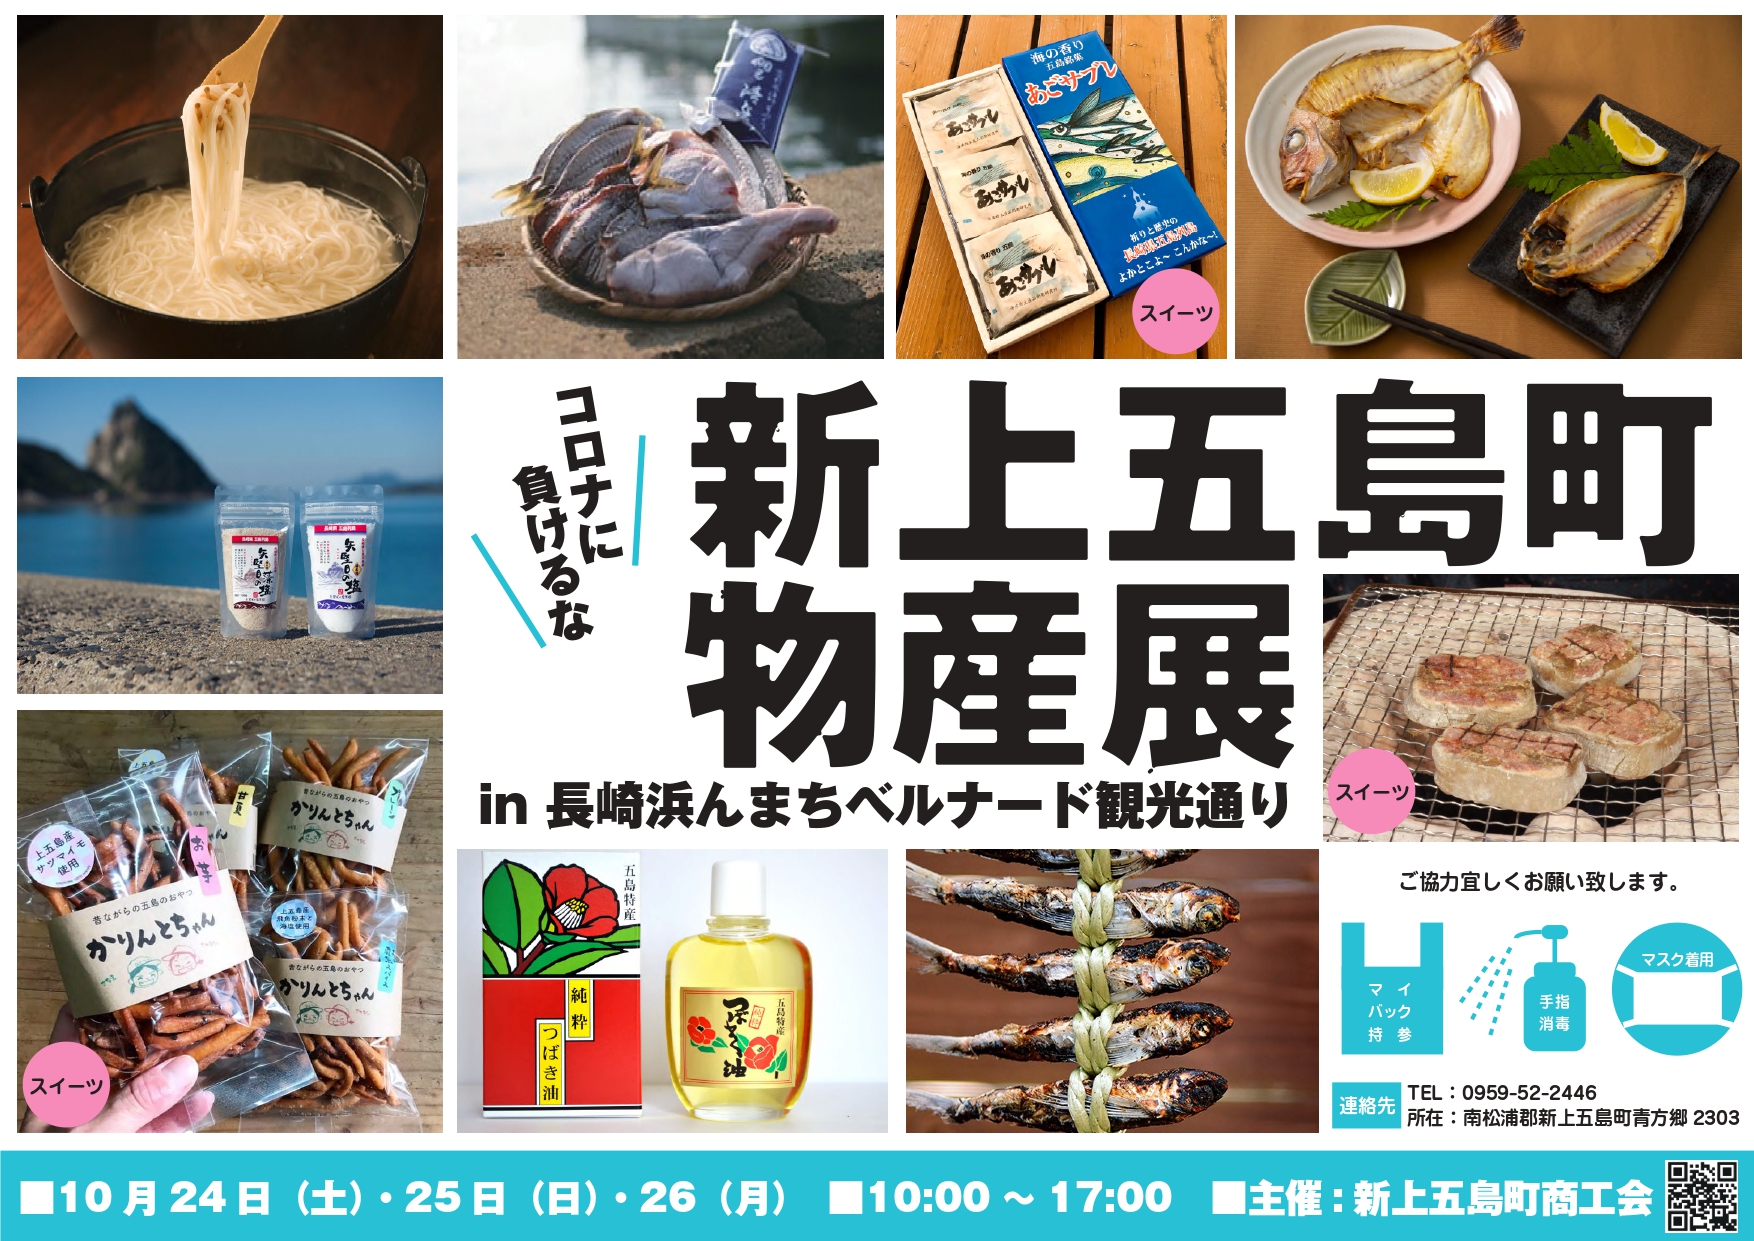 「新上五島町物産展in長崎浜んまちベルナード観光通り」を開催します